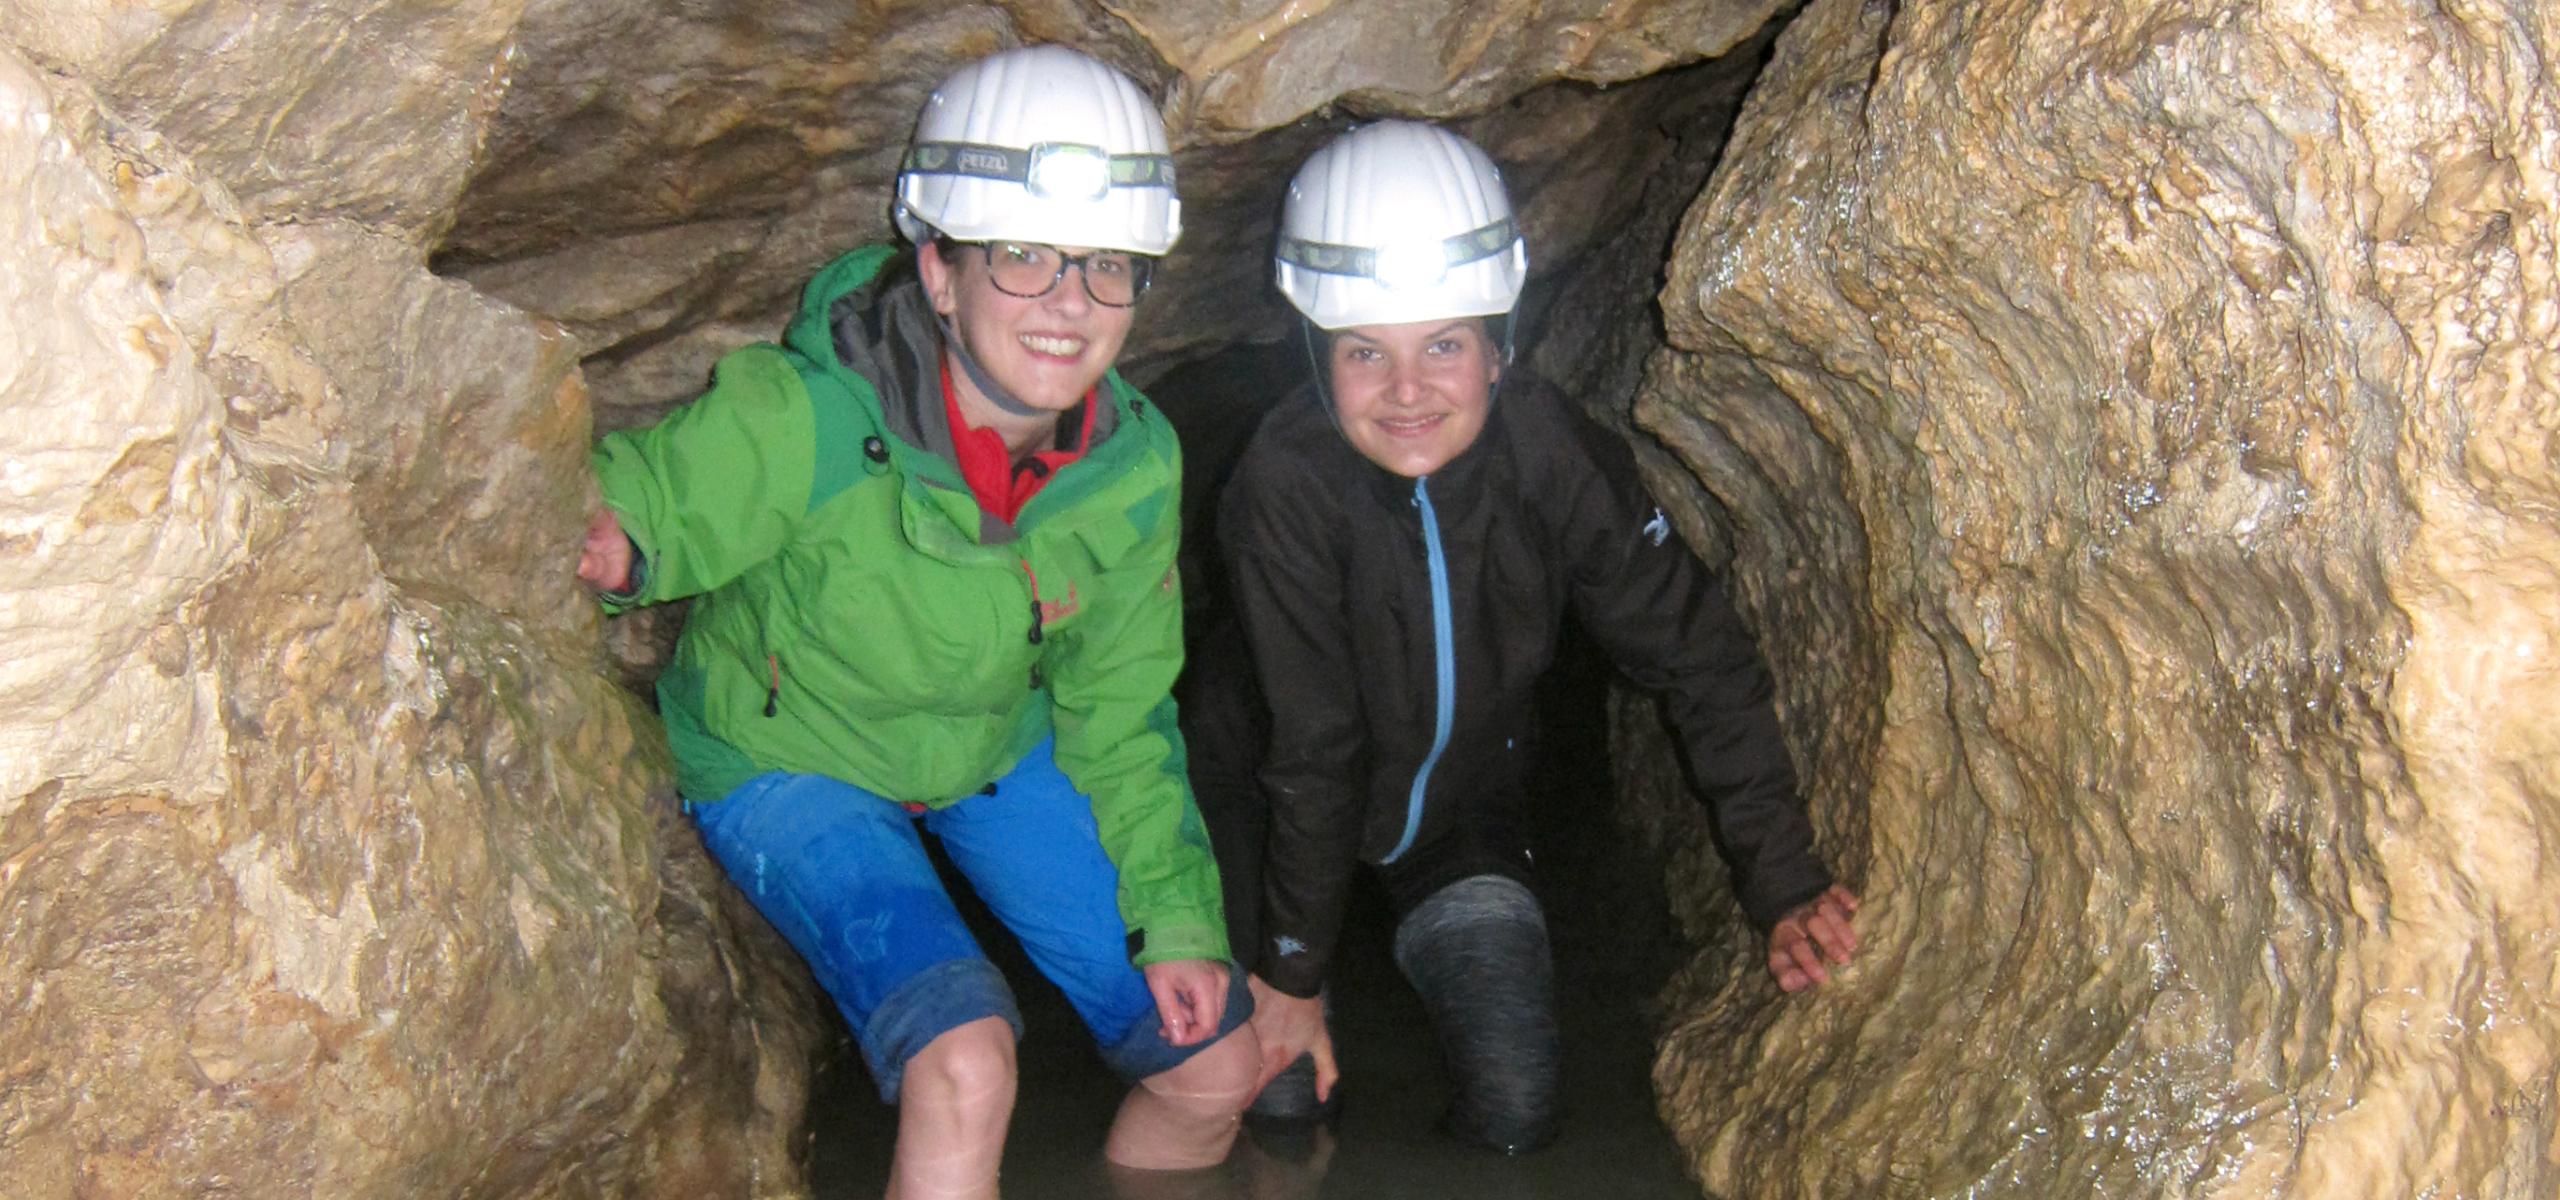 Zwei Kinder waten in einem Höhlengang knietief durchs Wasser